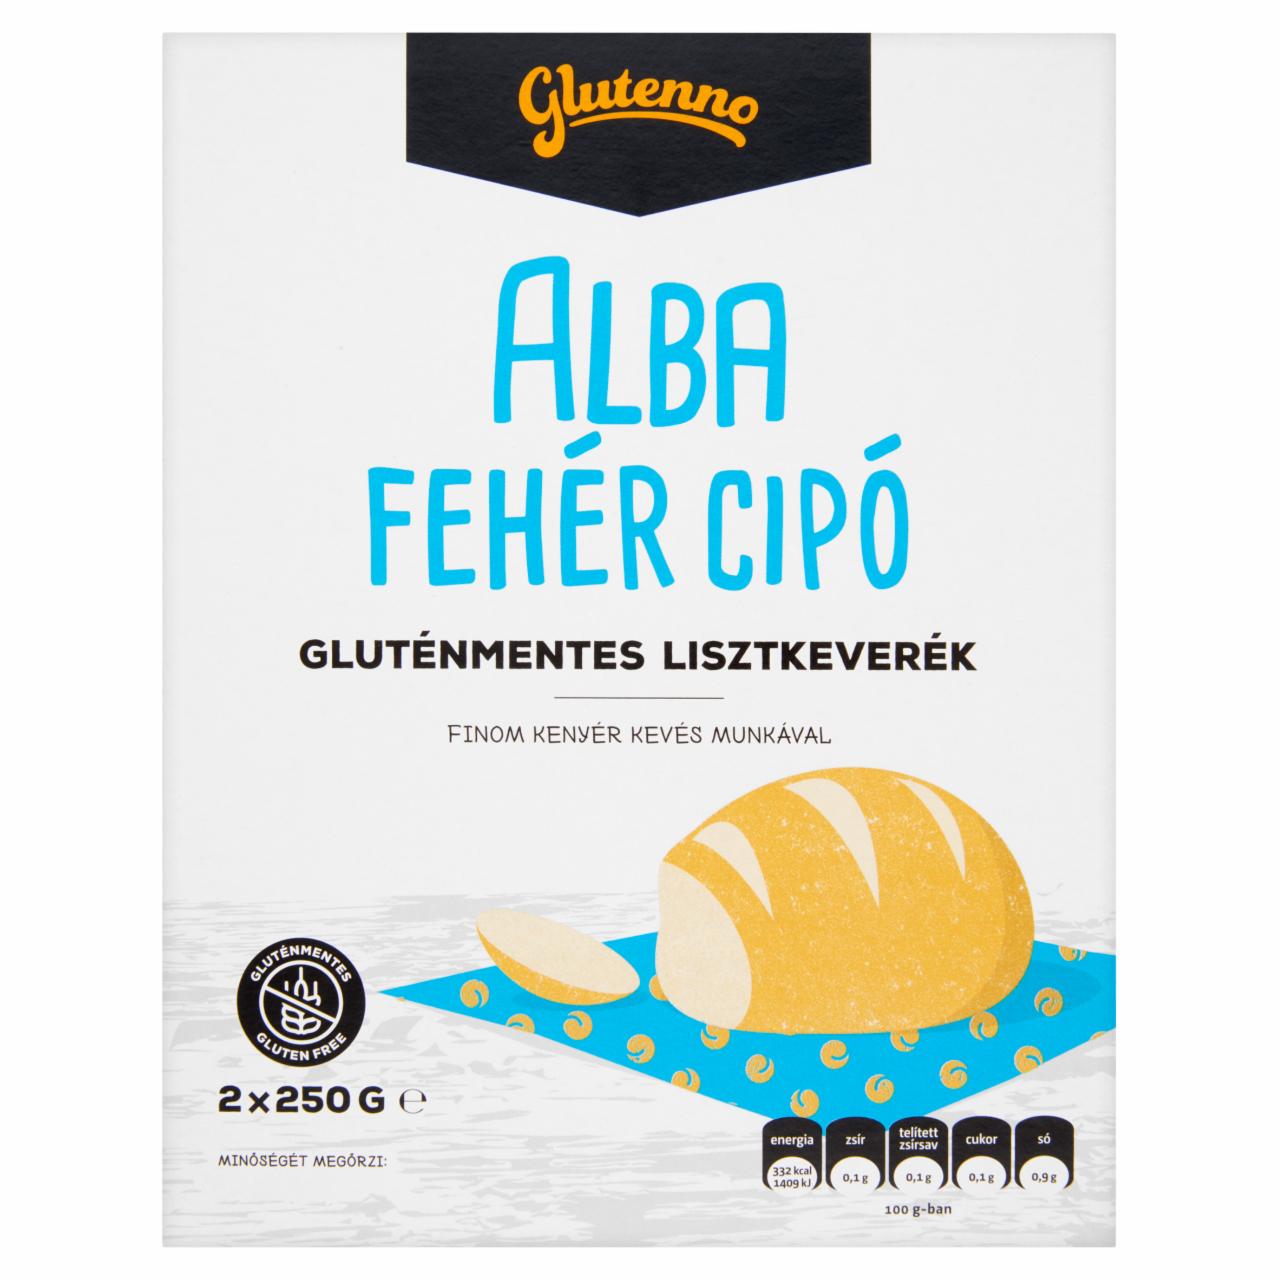 Képek - Glutenno Alba gluténmentes lisztkeverék fehér cipóhoz 2 x 250 g